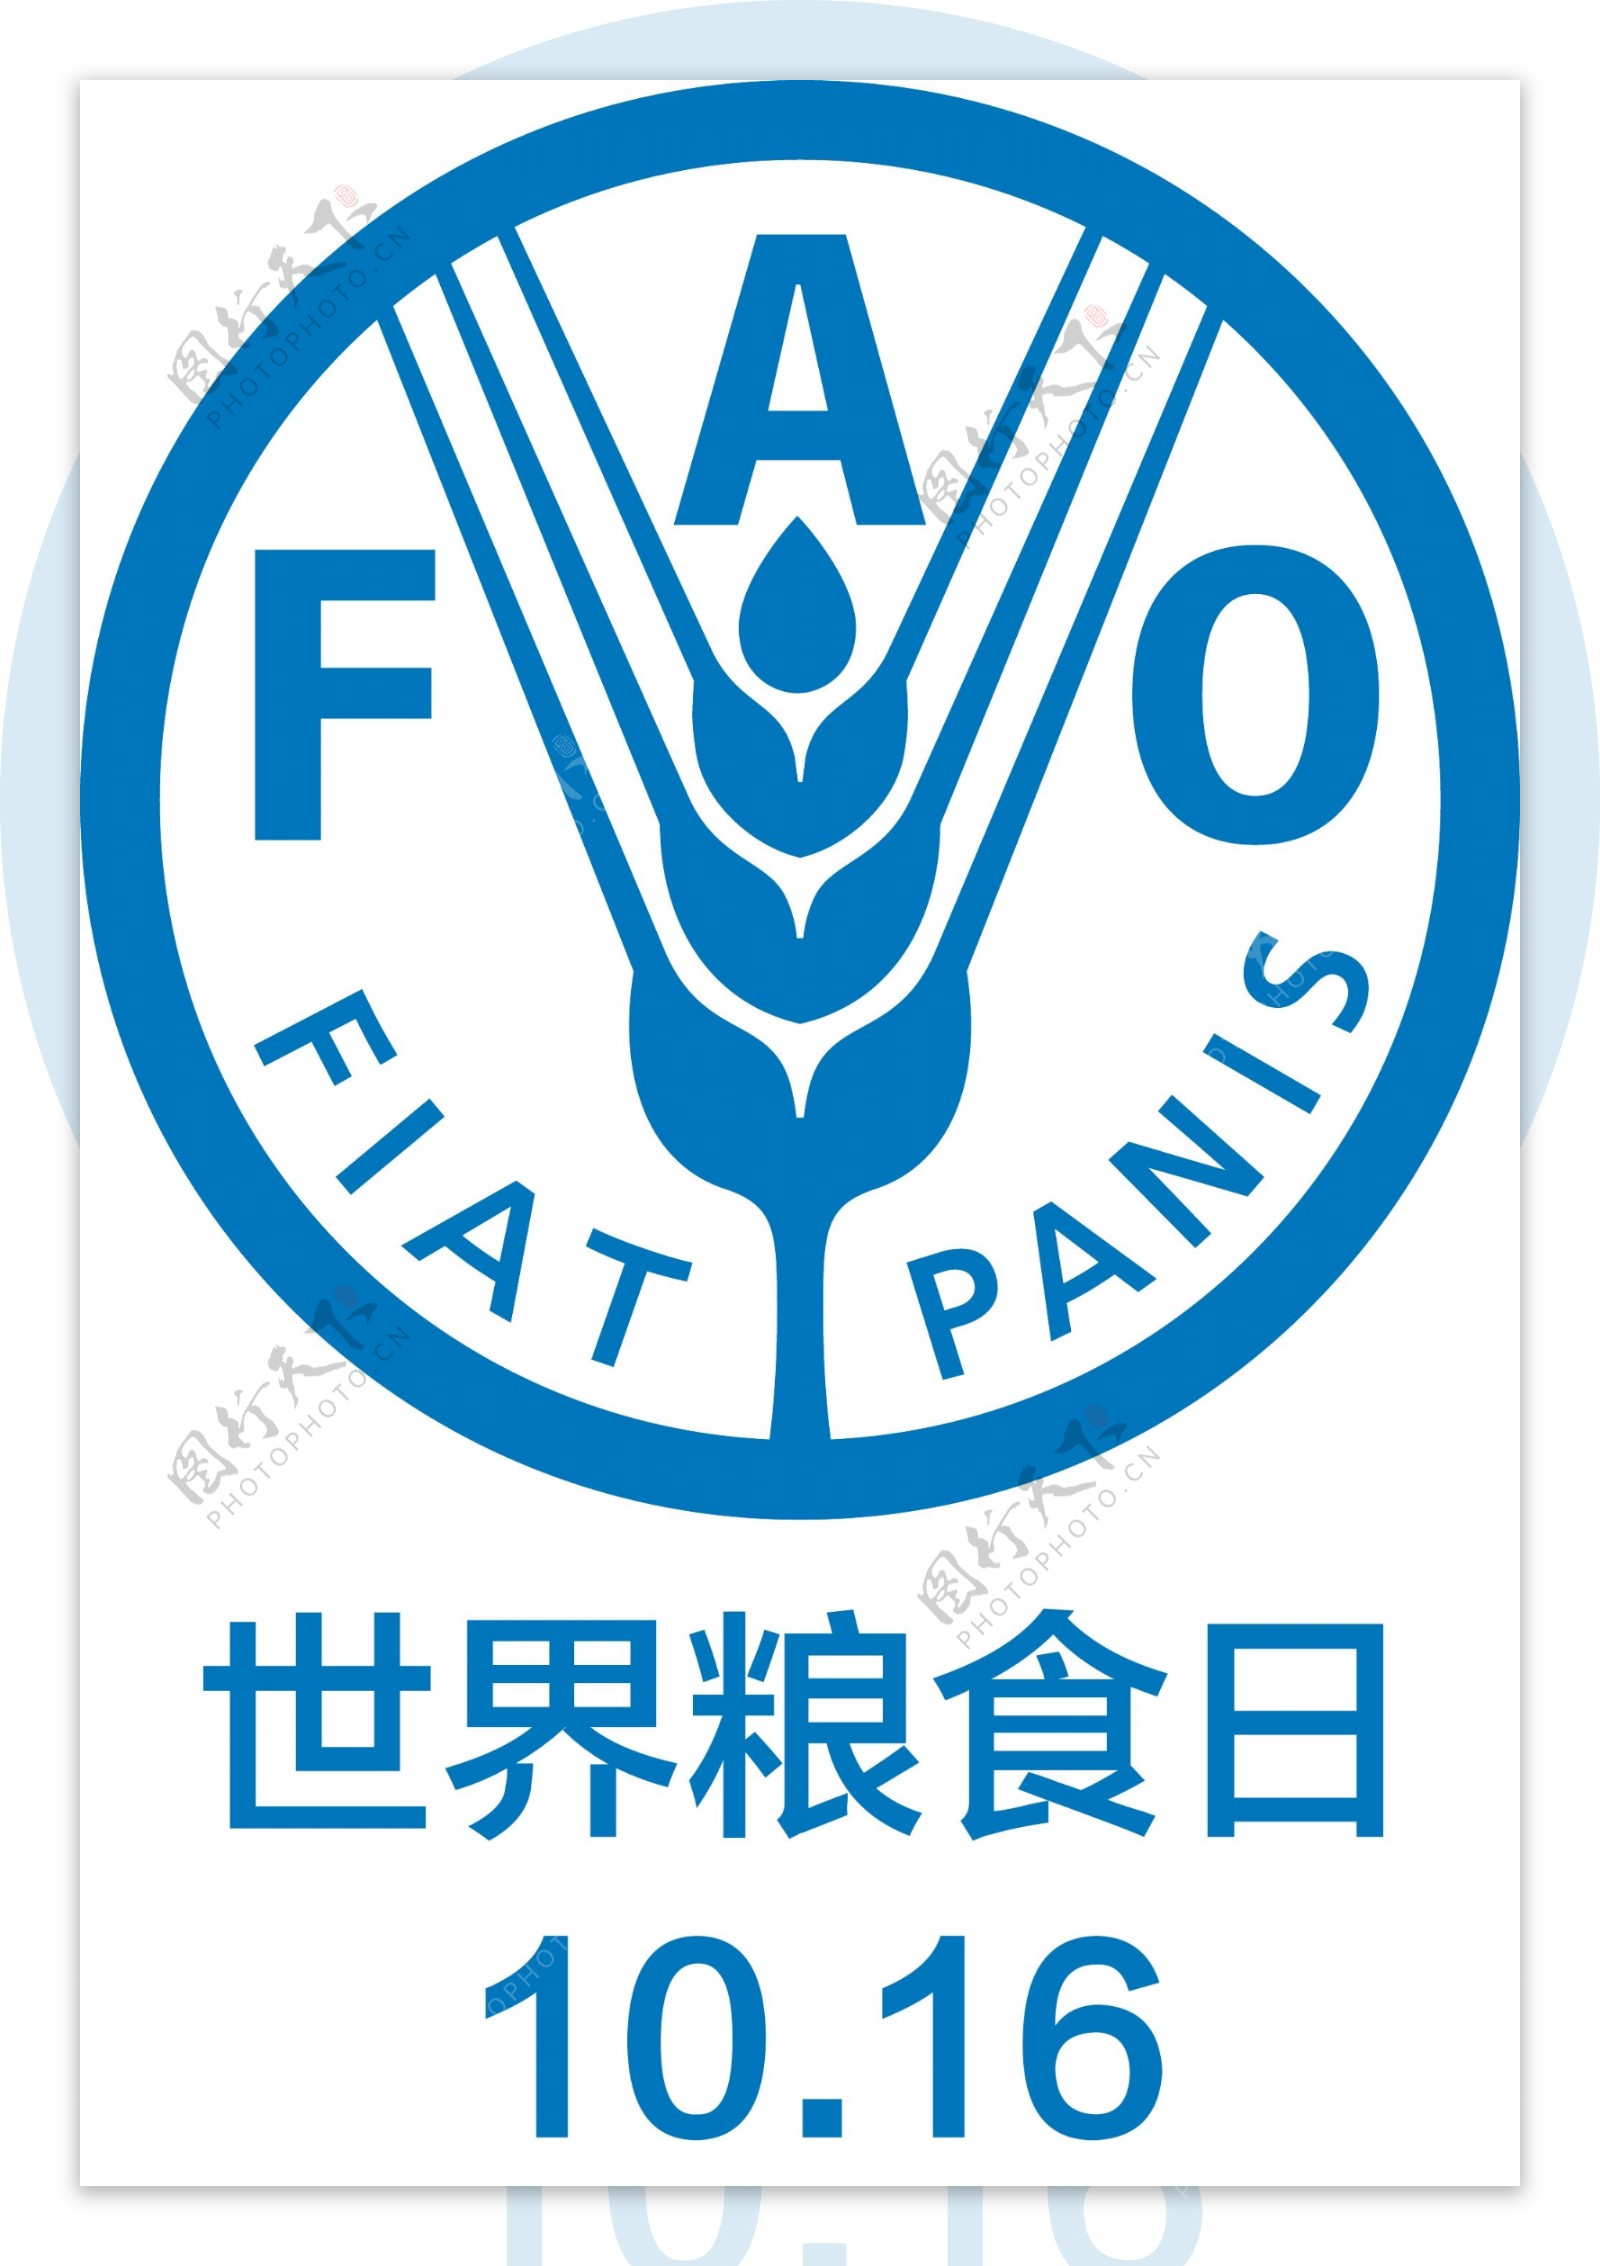 世界粮食日logo图片